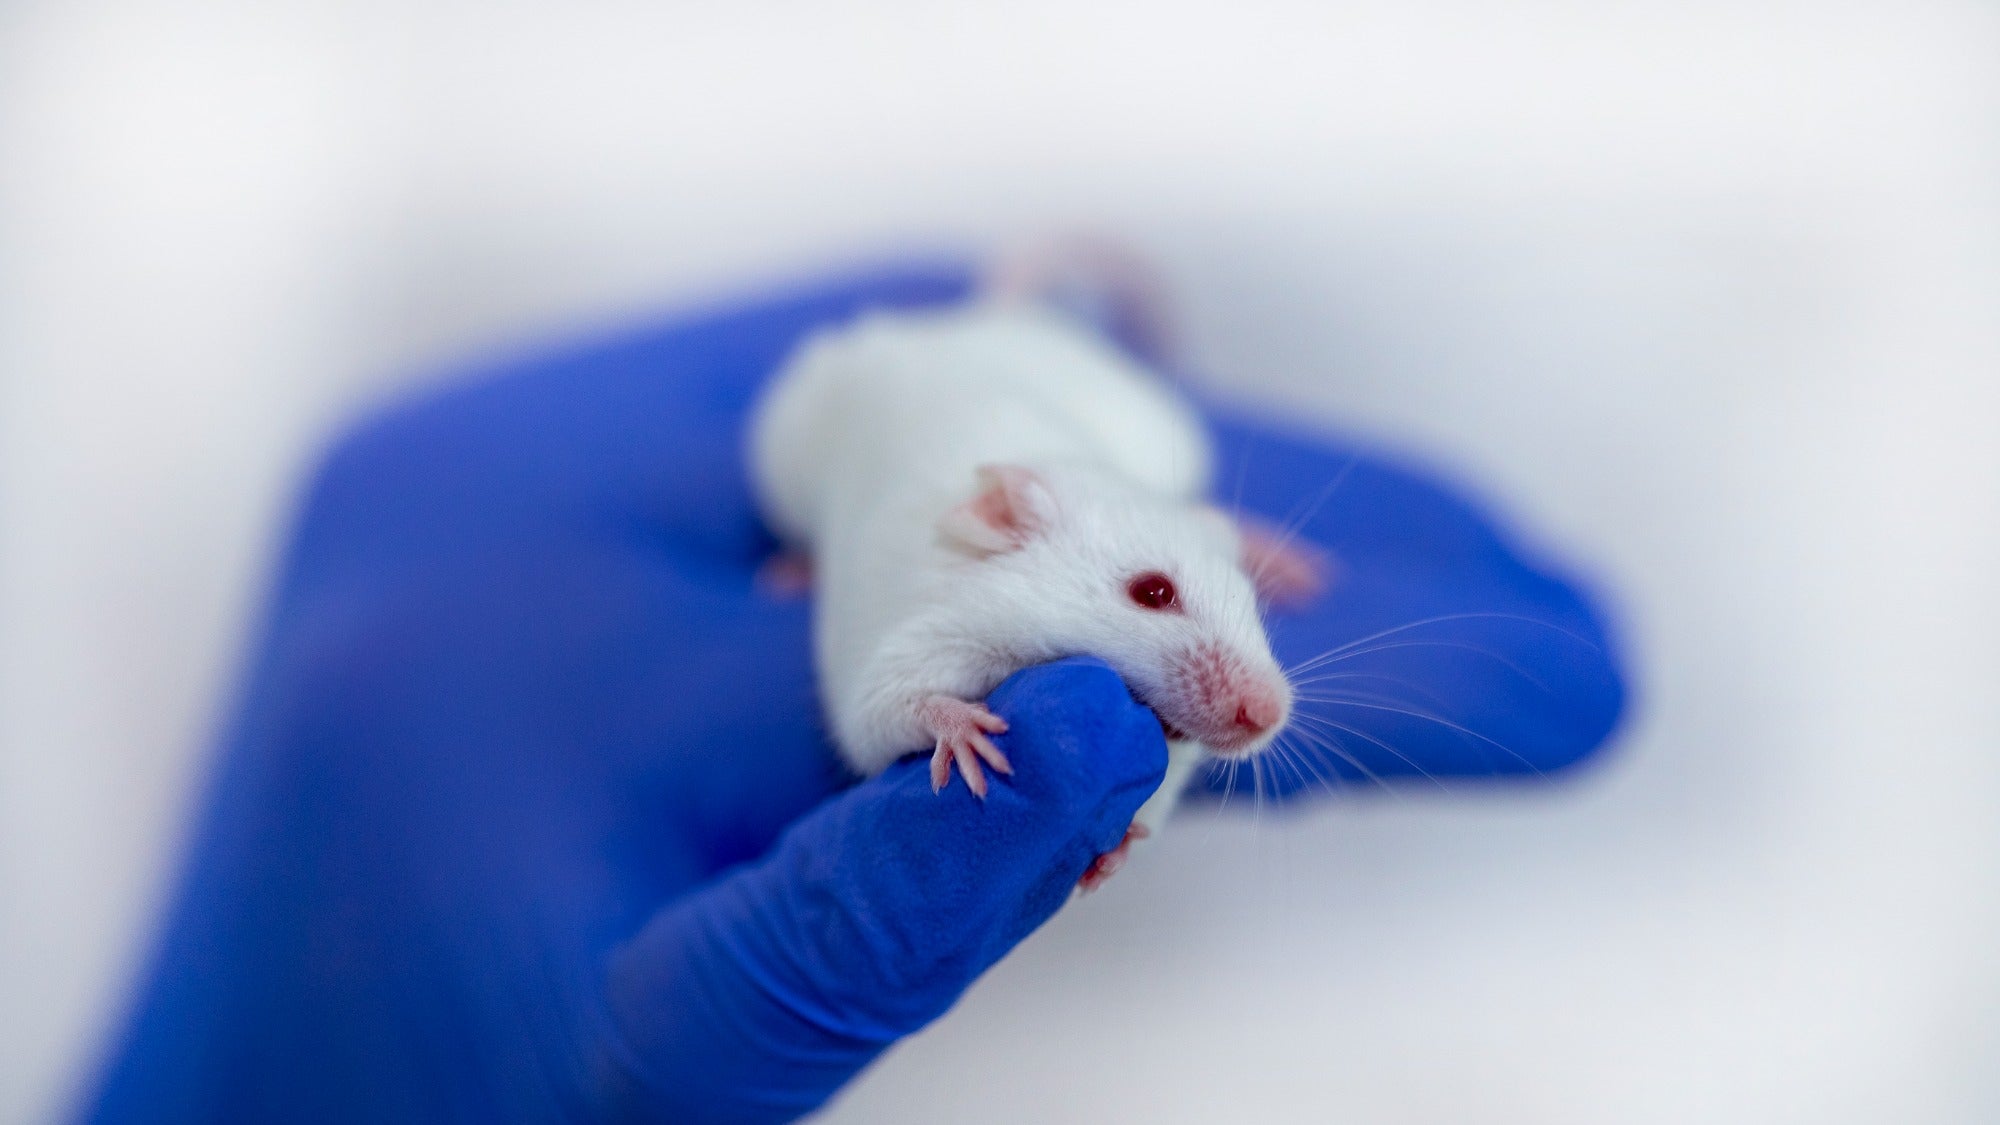 Hacer crecer astas en ratones podría conducir a nuevos tratamientos médicos